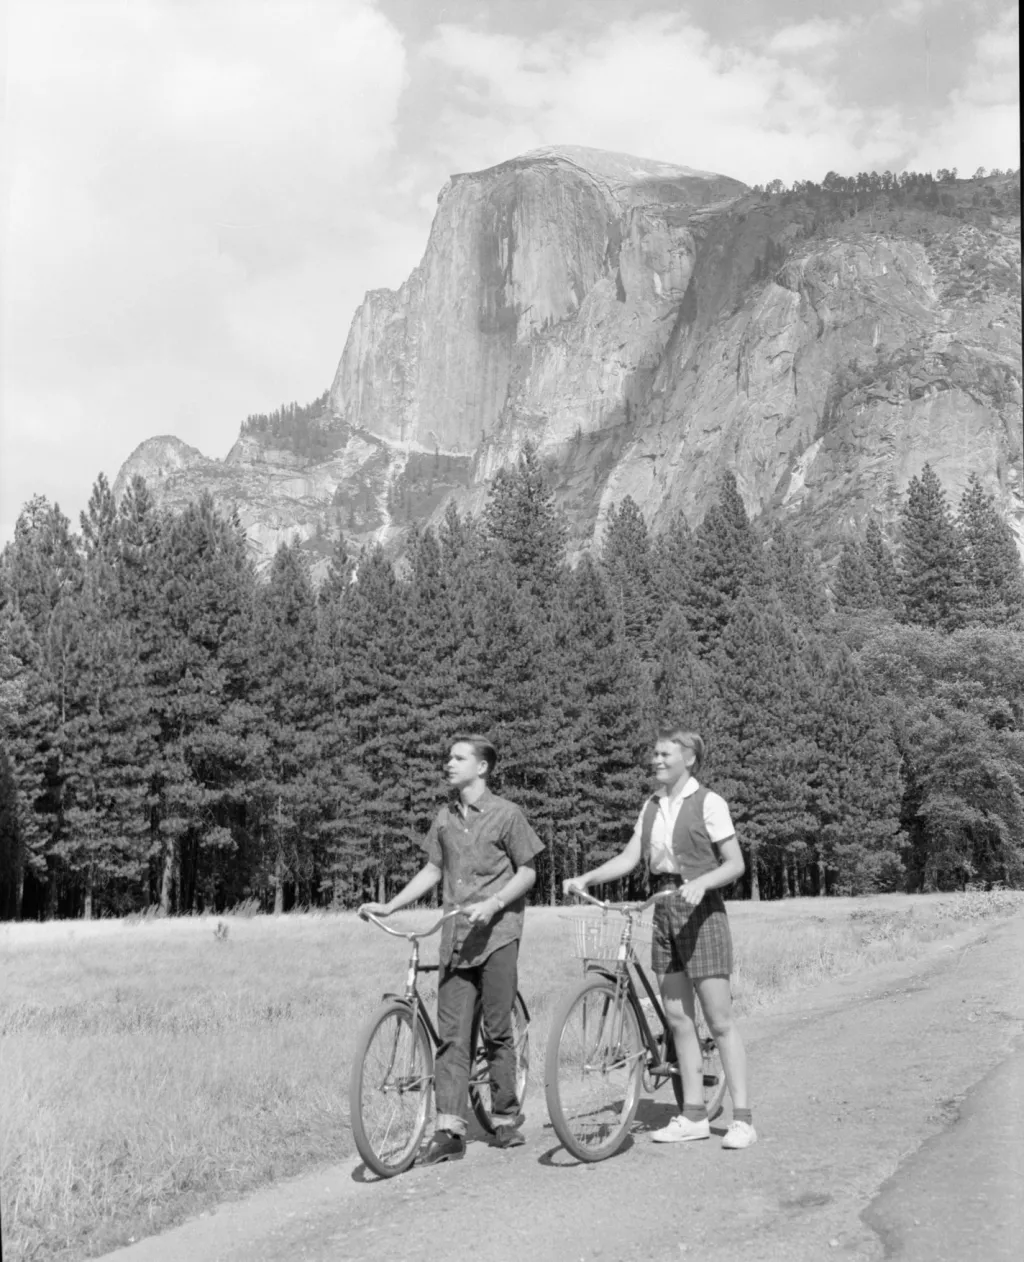 V 50. letech začali Američané objevovat i kouzlo cykloturistiky. Na snímku z roku 1959 jsou zachycení návstěvníci u skalního útvaru Half Dome v Yosemitském národním parku v Kalifornii